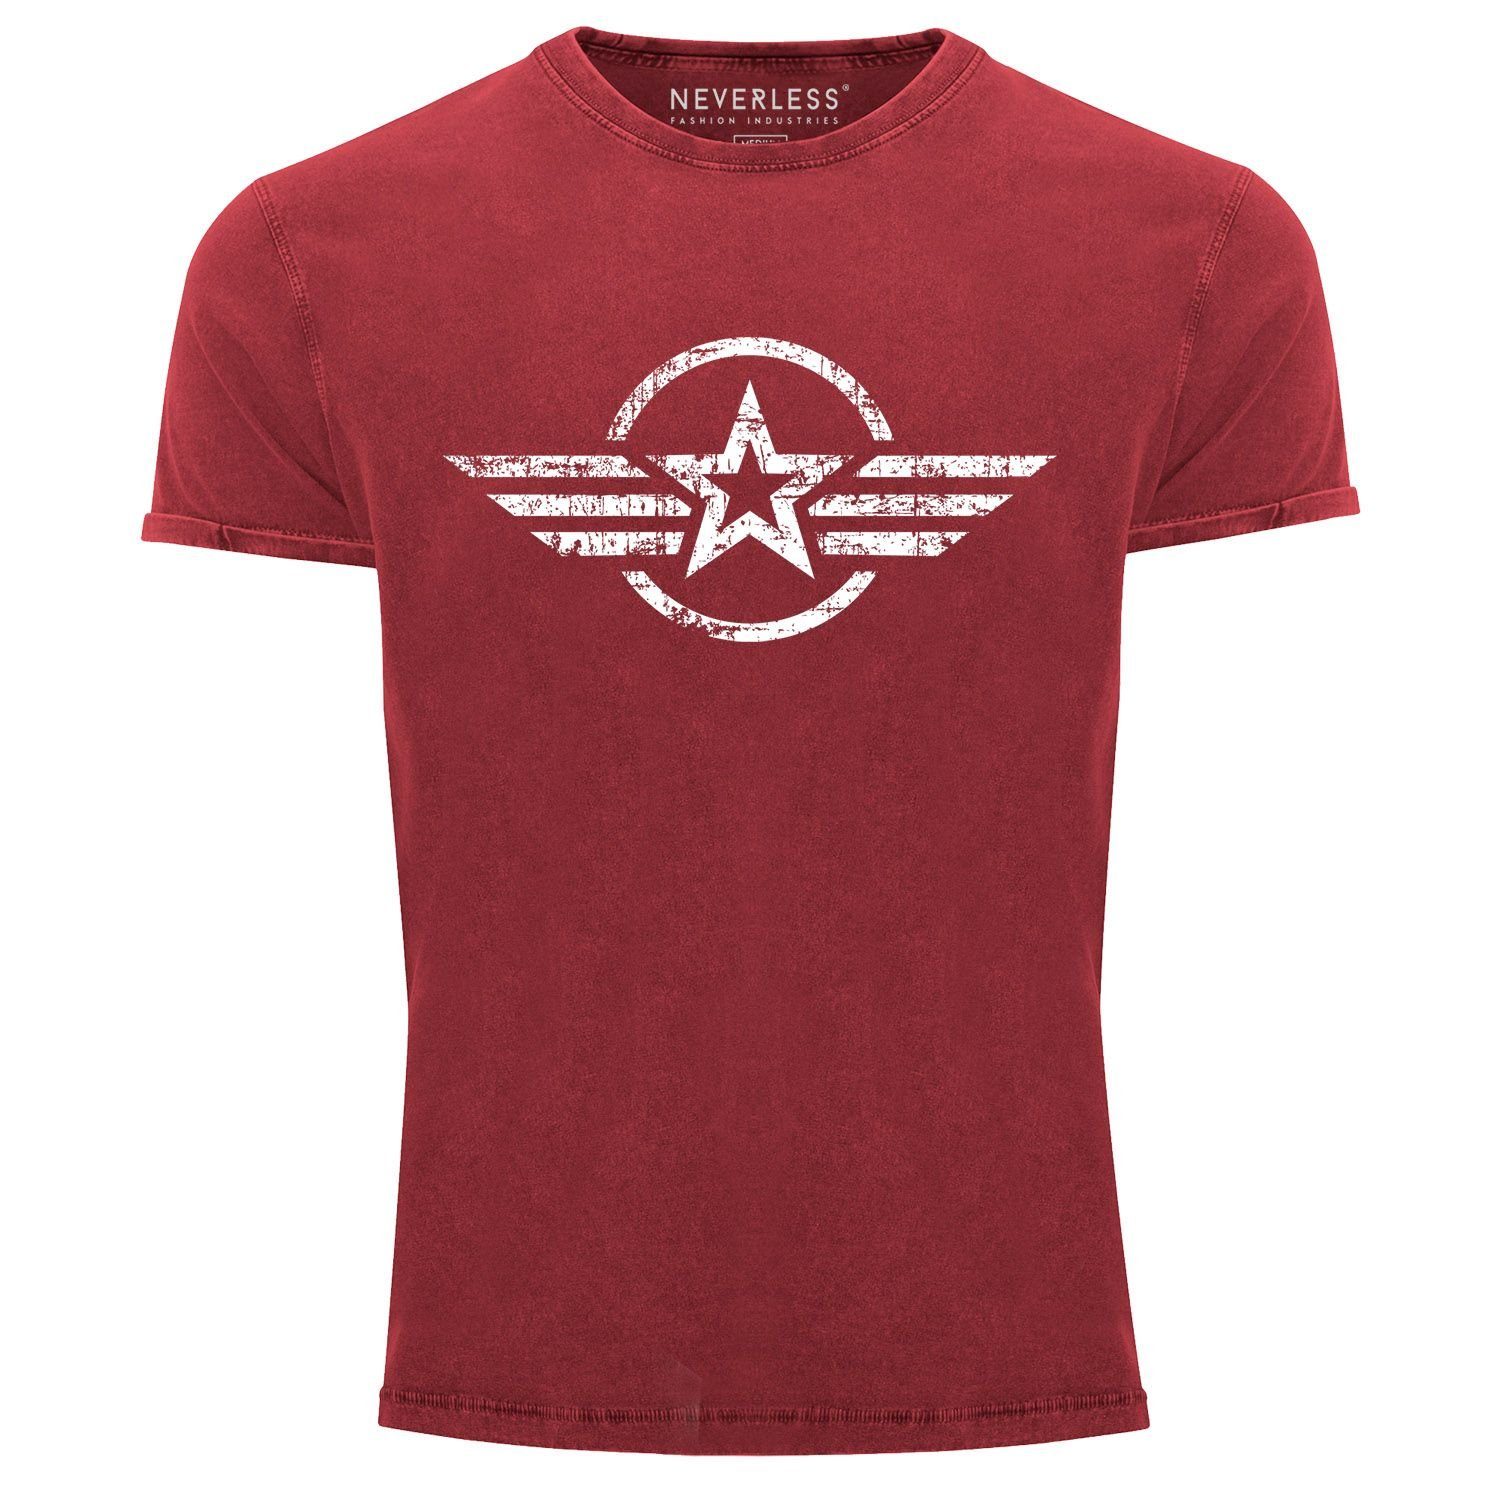 Military Aufdruck Army Neverless Shirt Slim Print Look Used mit Printshirt Vintage Airforce Print-Shirt Herren rot Aufdruck Fit T-Shirt Stern Neverless®